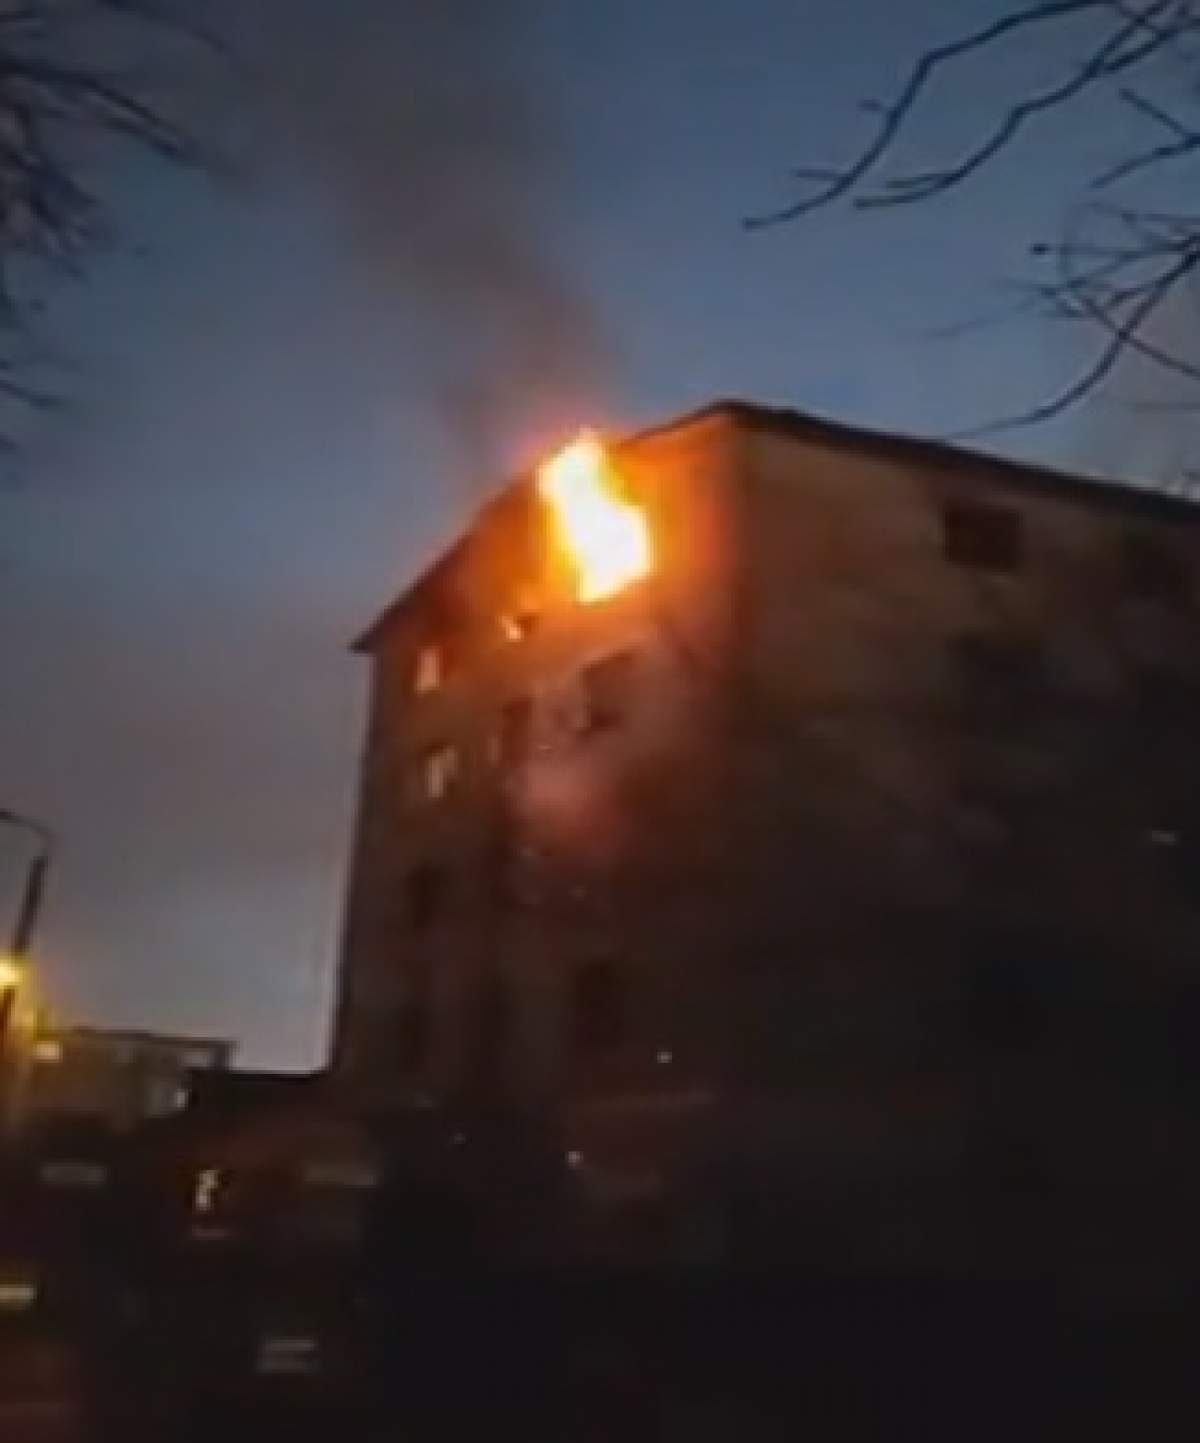 Un bărbat din Iași a murit în chinuri, după ce apartamentul în care locuia a izbucnit în flăcări. Vecinii, cuprinși de panică